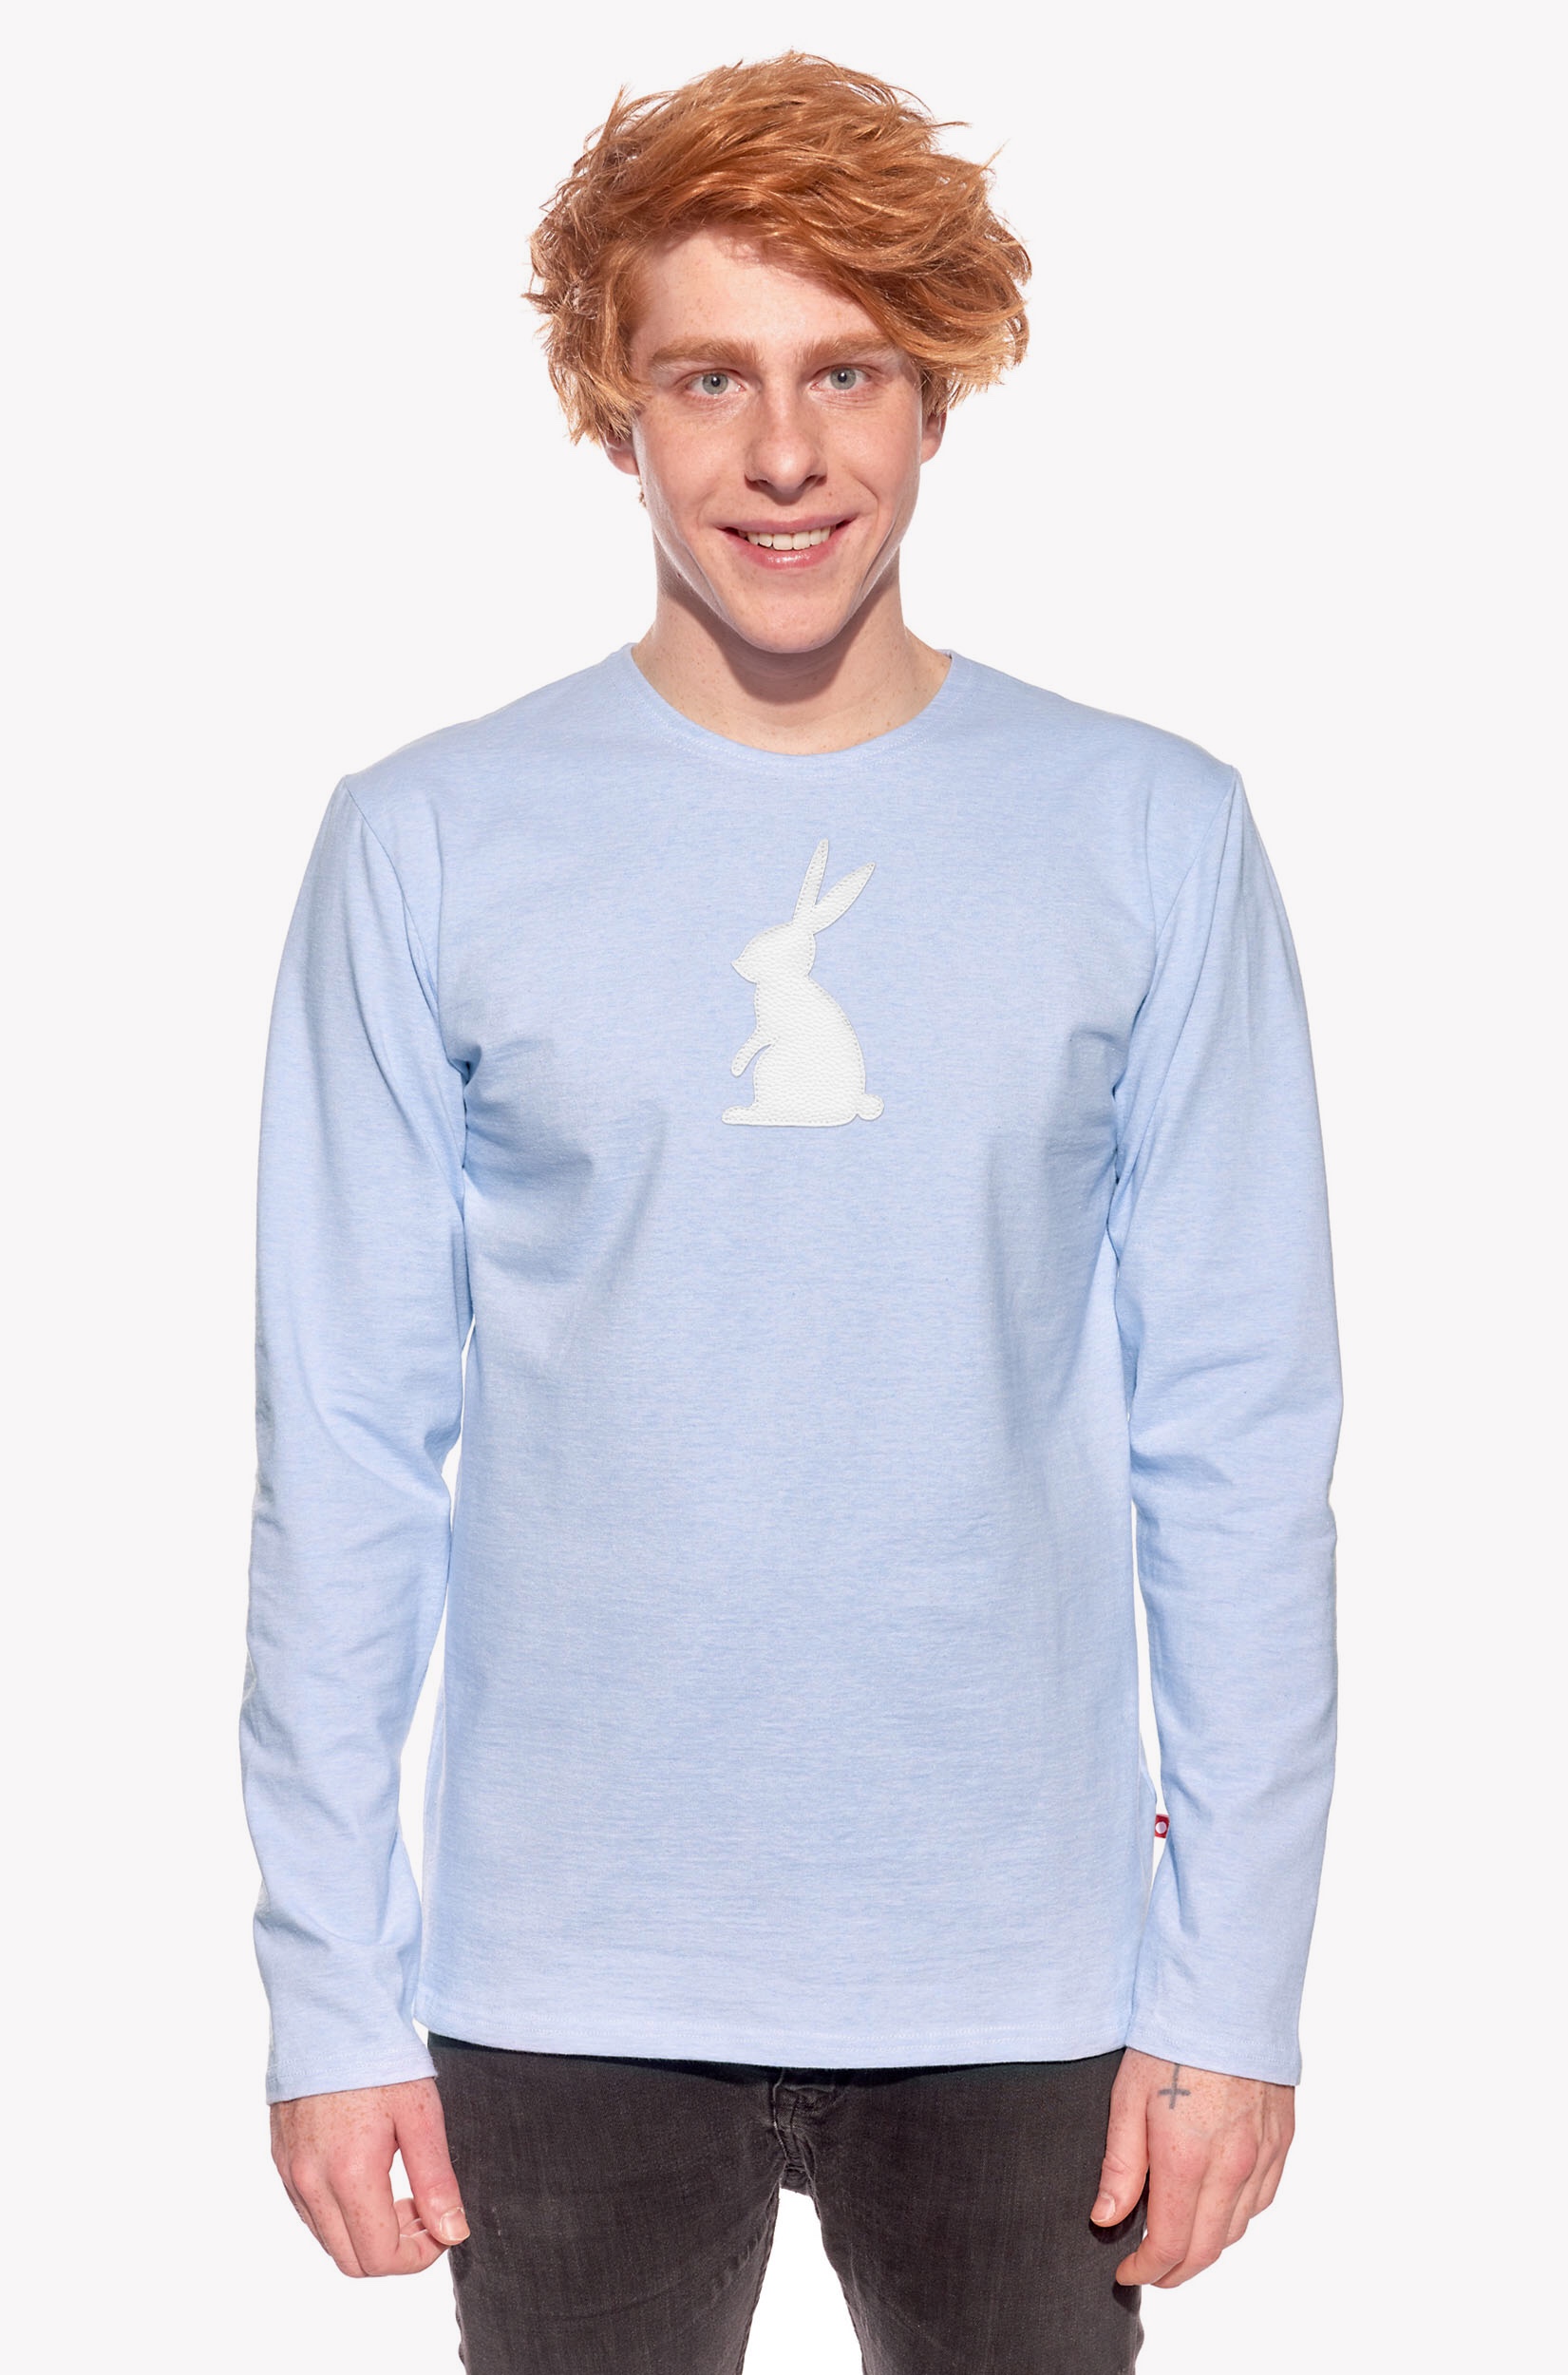 Tričko so zajacom